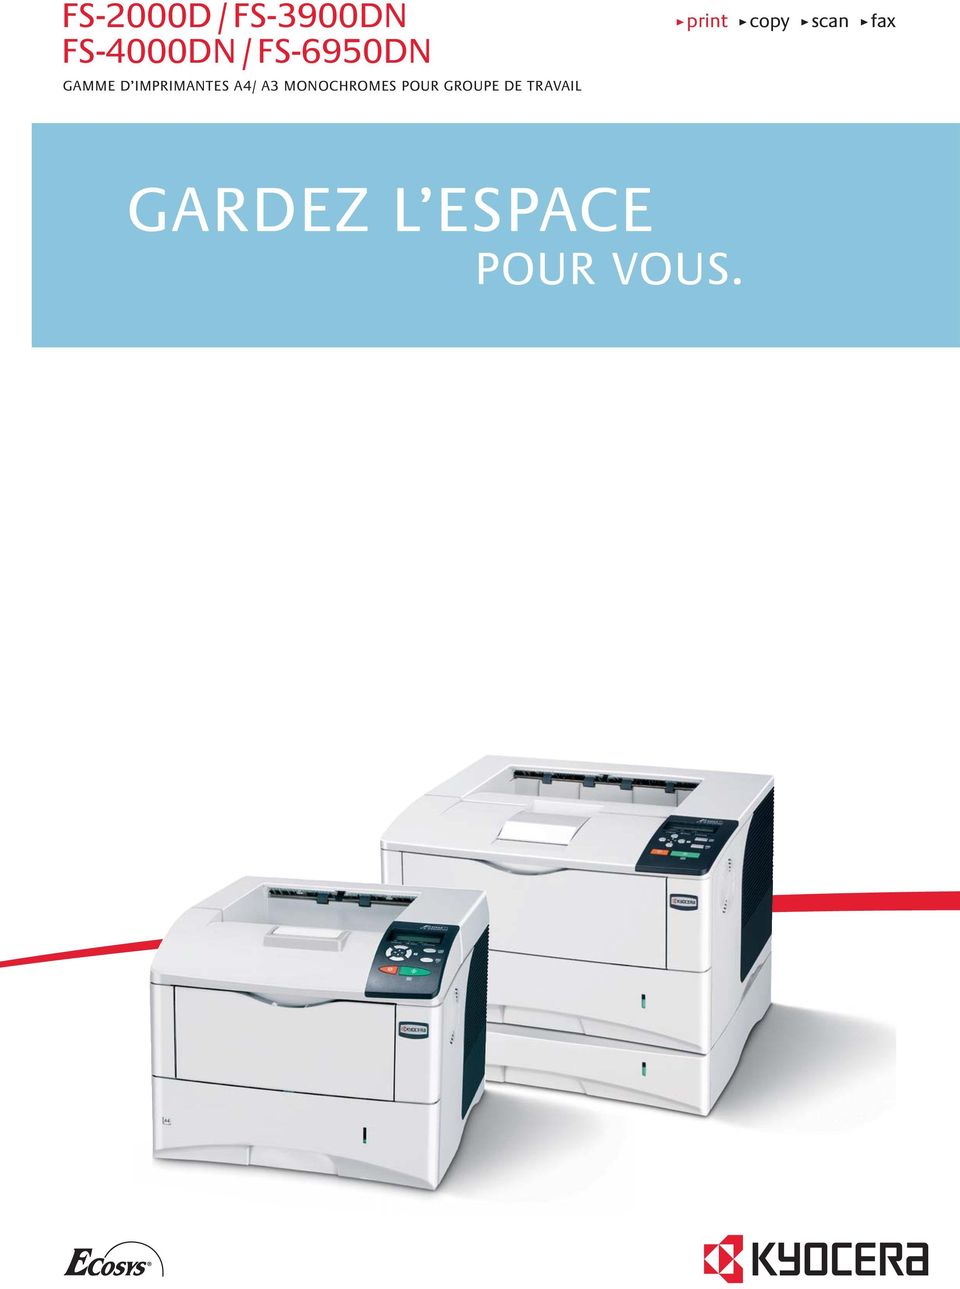 GROUPE DE TRAVAIL print copy scan fax SPACE